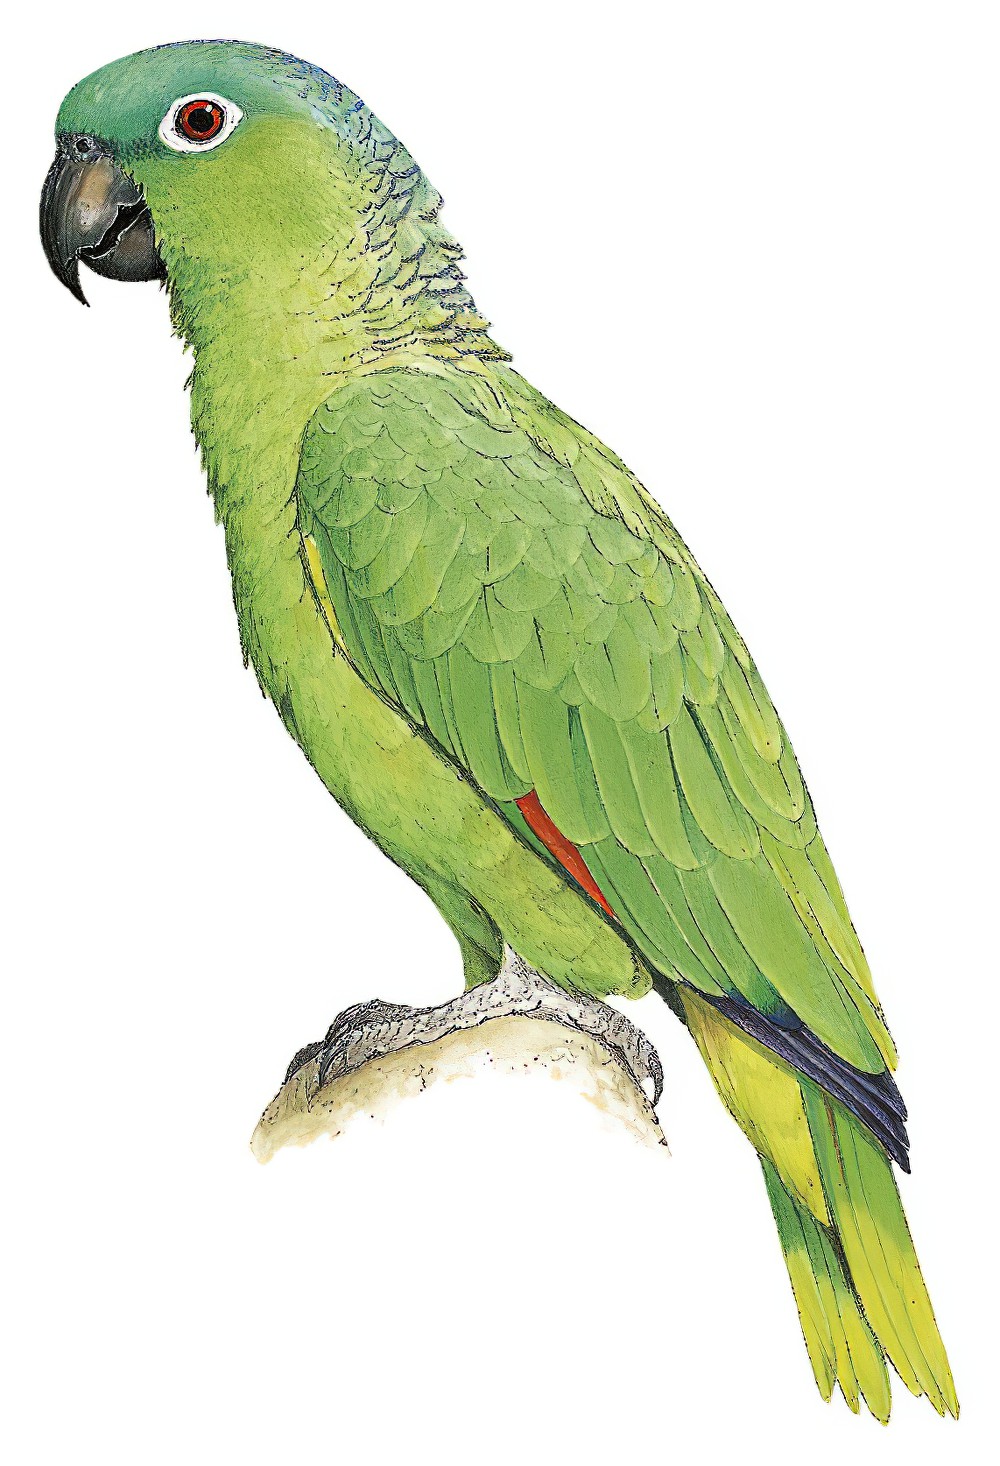 Mealy Parrot / Amazona farinosa